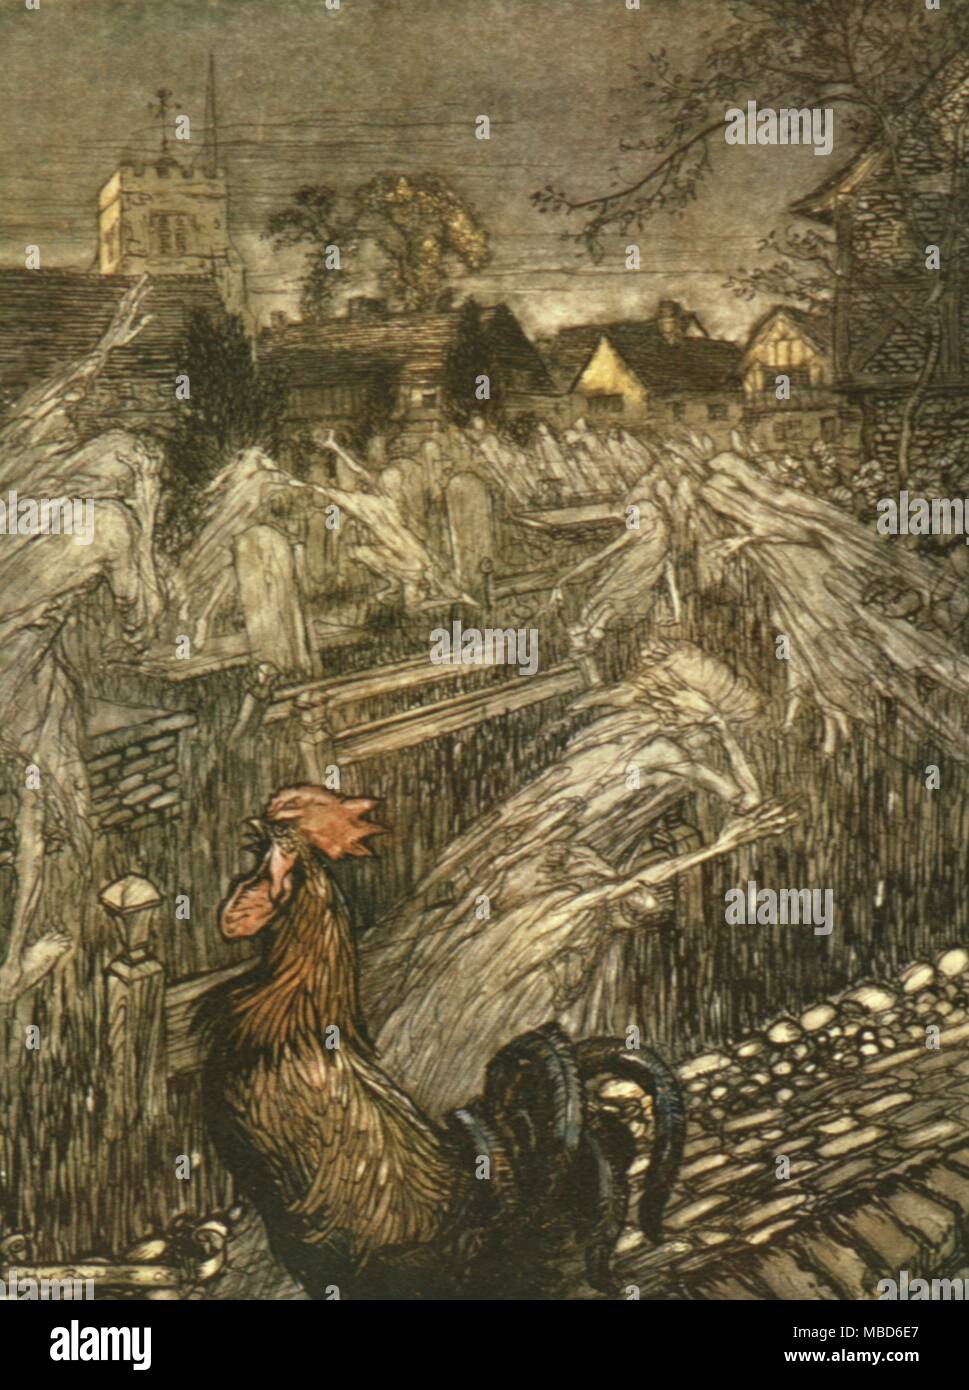 Geister, hier und dort Wandern, Truppe zu Hause Kirchhöfe. Abbildung von Arthur Rackham für die 1908 Edition von Ein Sommernachtstraum von Shakespeare. Stockfoto